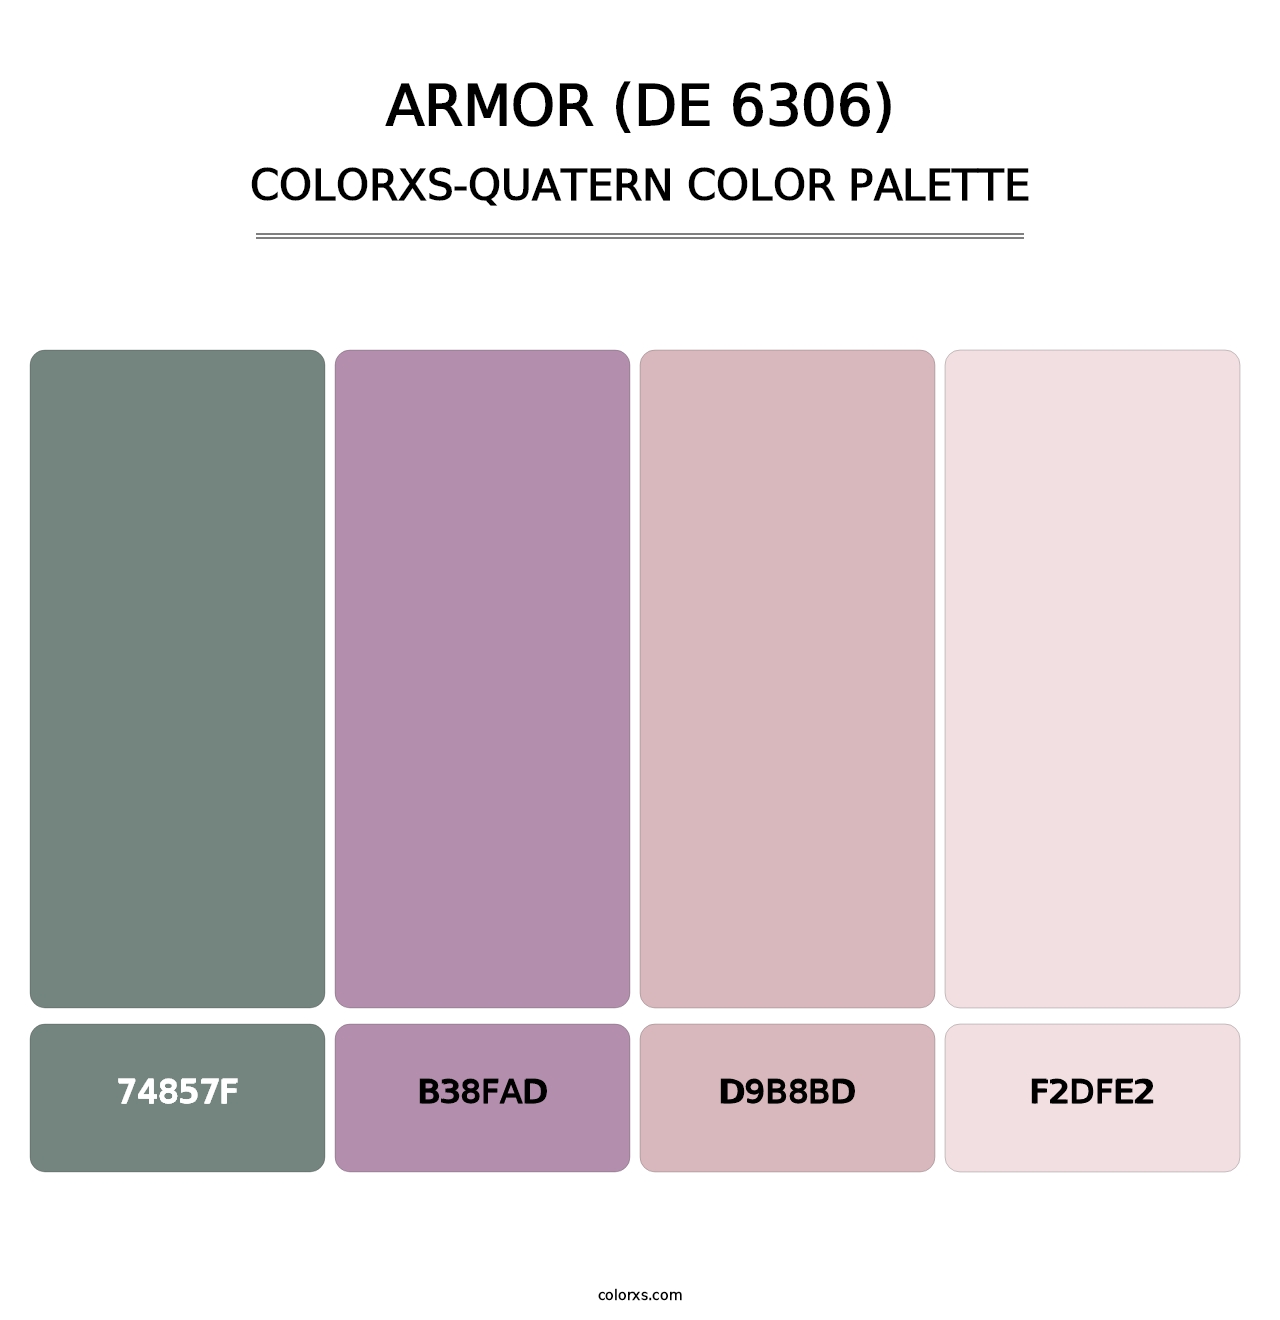 Armor (DE 6306) - Colorxs Quatern Palette